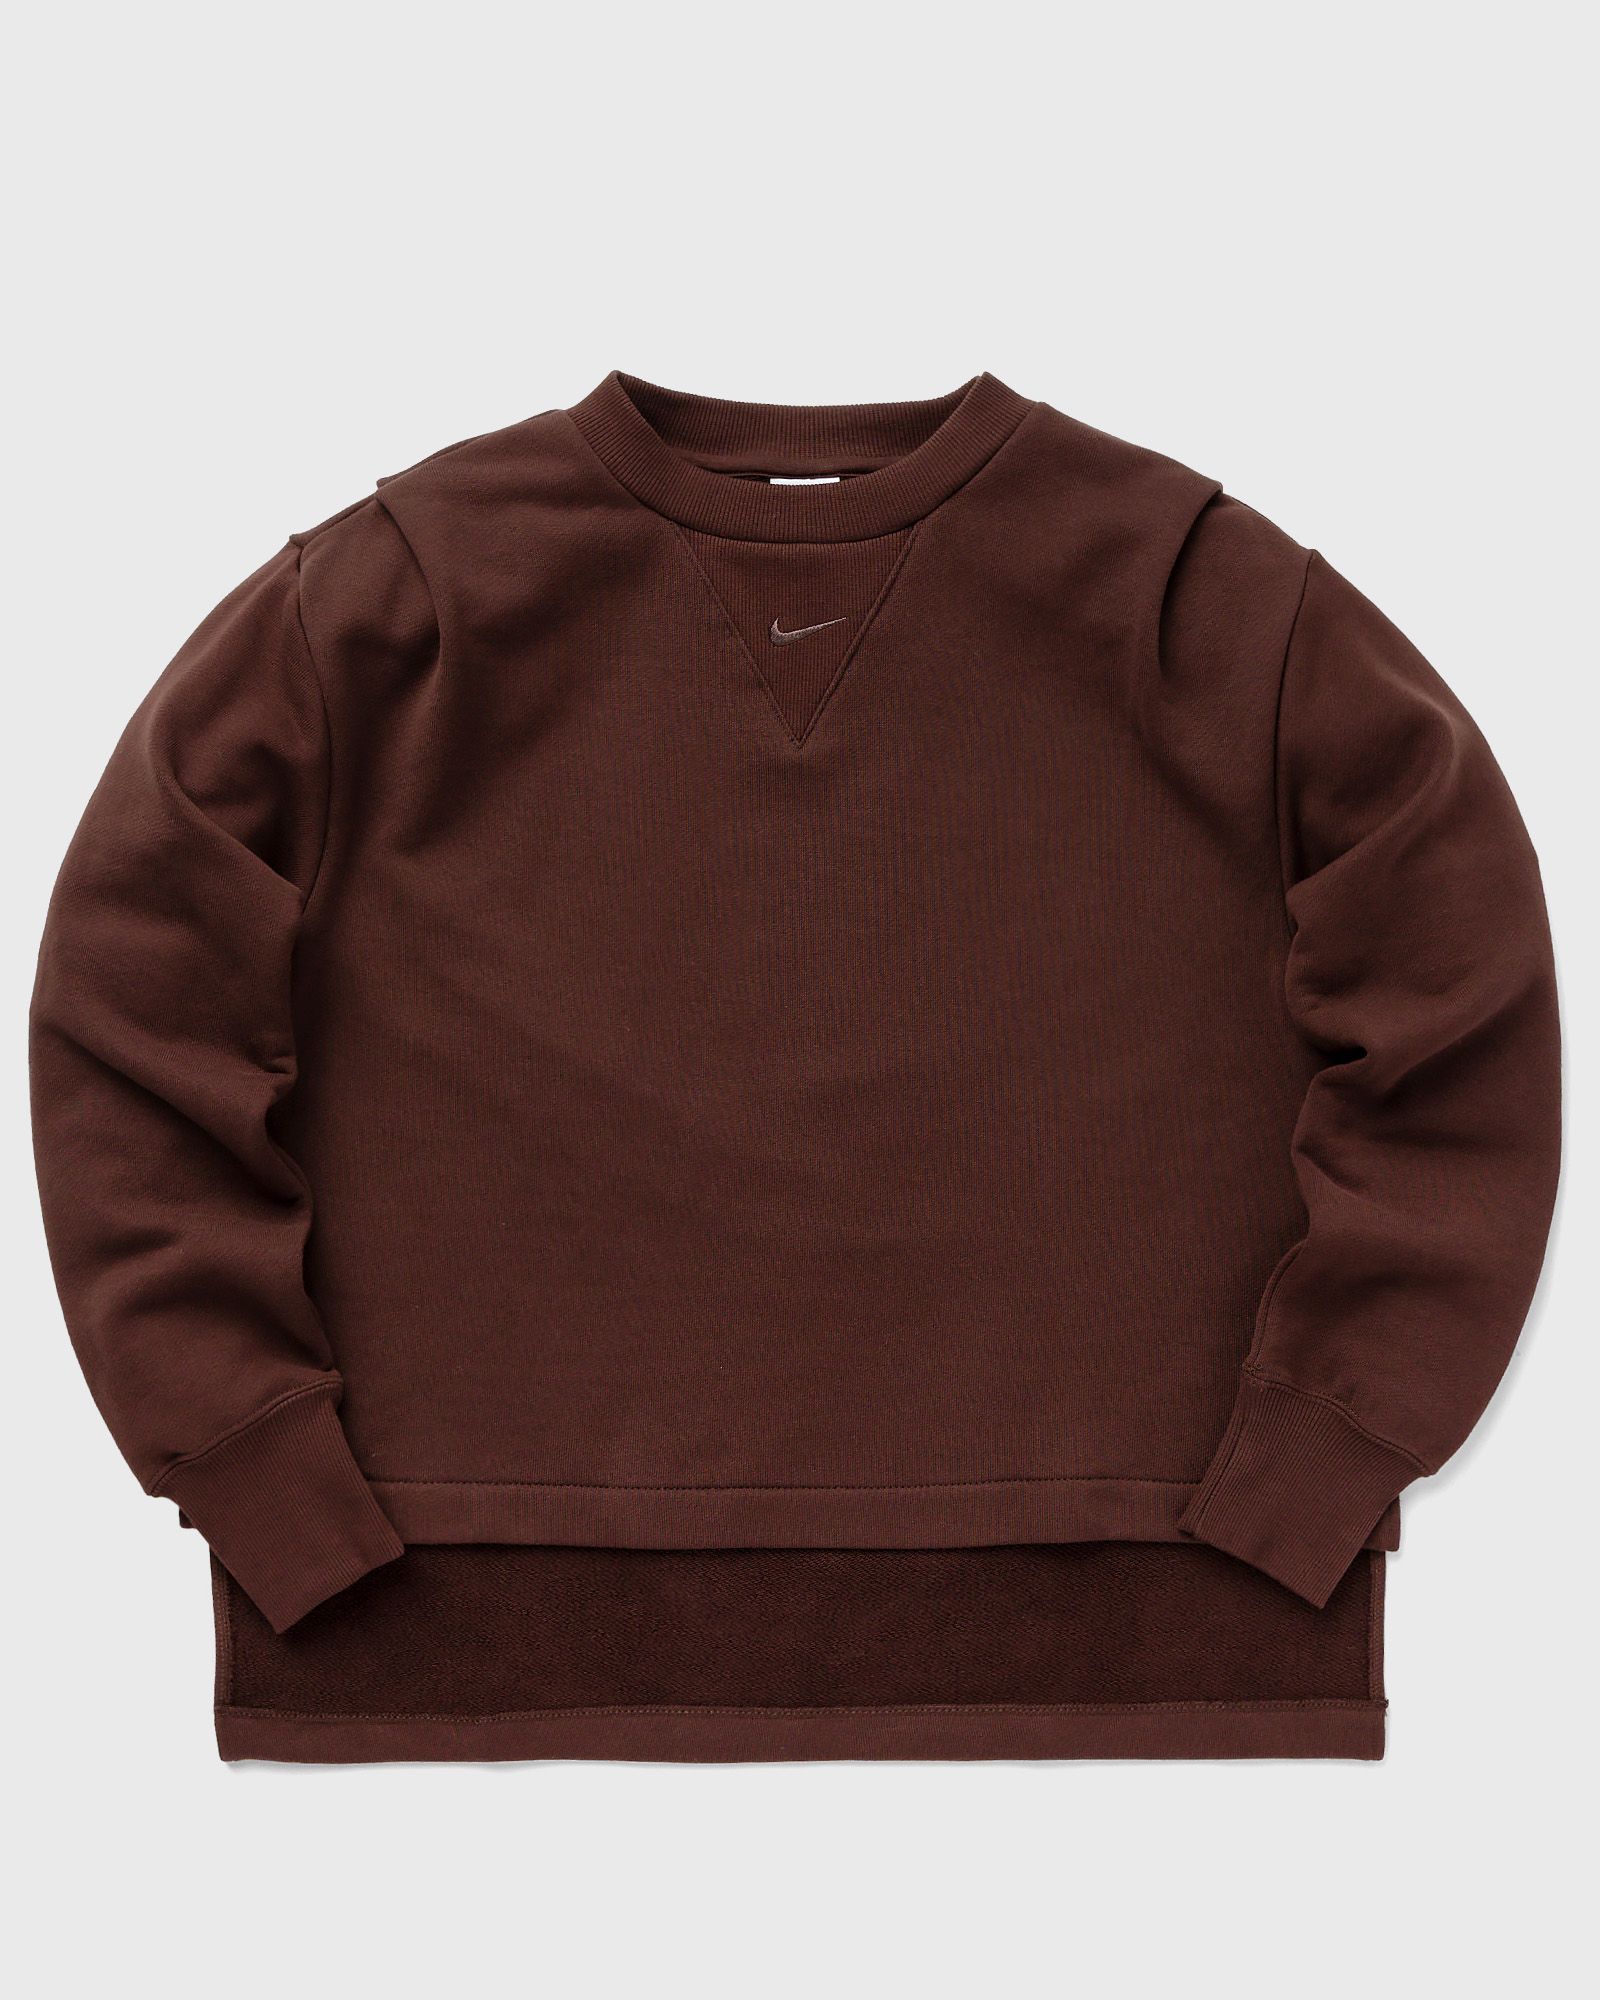 Nike - wmns modern fleece crew women sweatshirts brown in größe:l